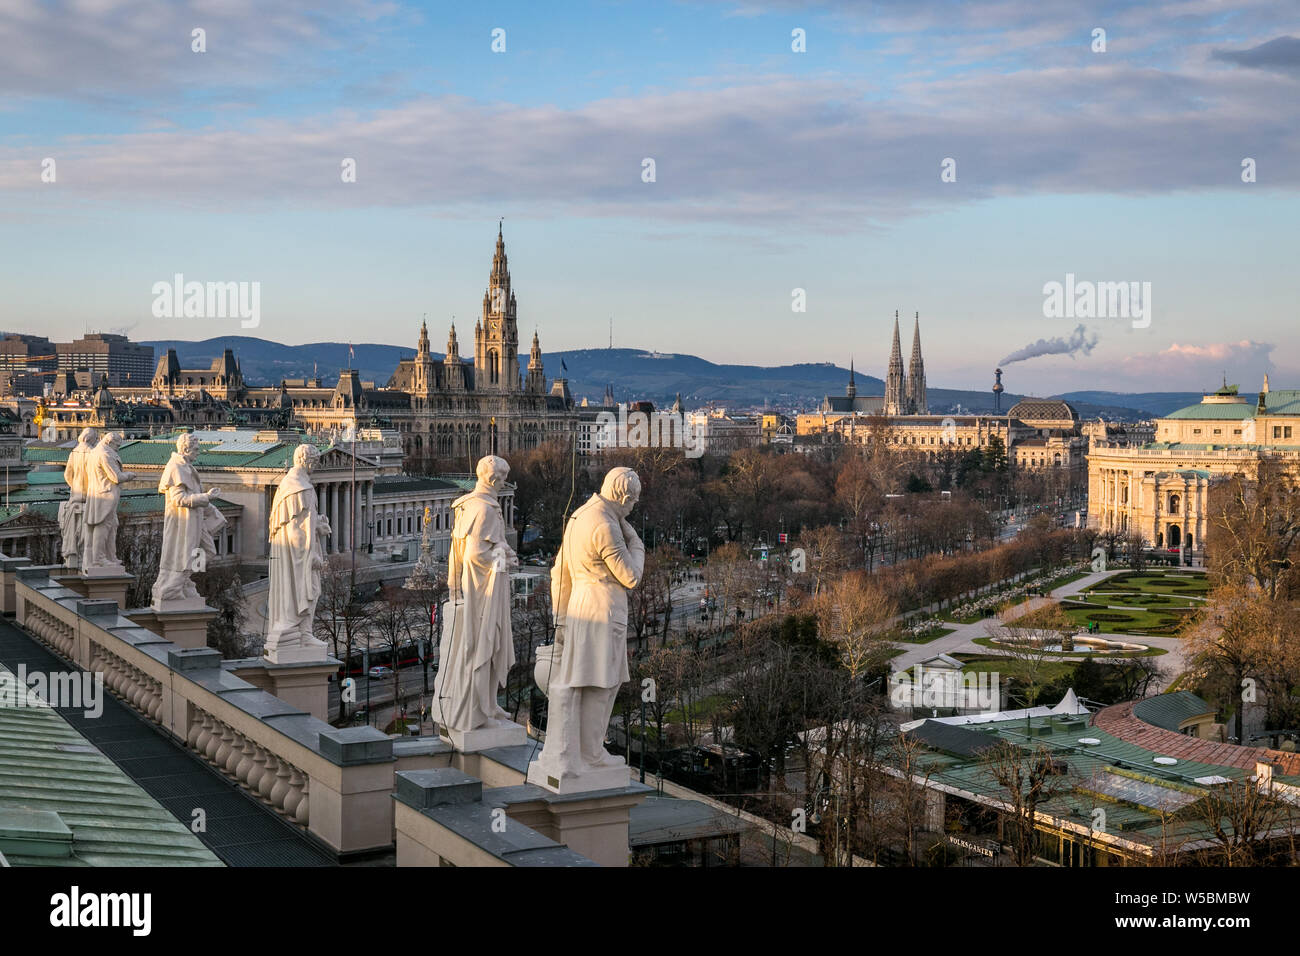 Statuen von berühmten Wissenschaftlern, auf dem Dach des Naturhistorischen Museums Ansicht mit dem Parlament und der Stadt Halle als schöne Stadtbild in Wien Stockfoto